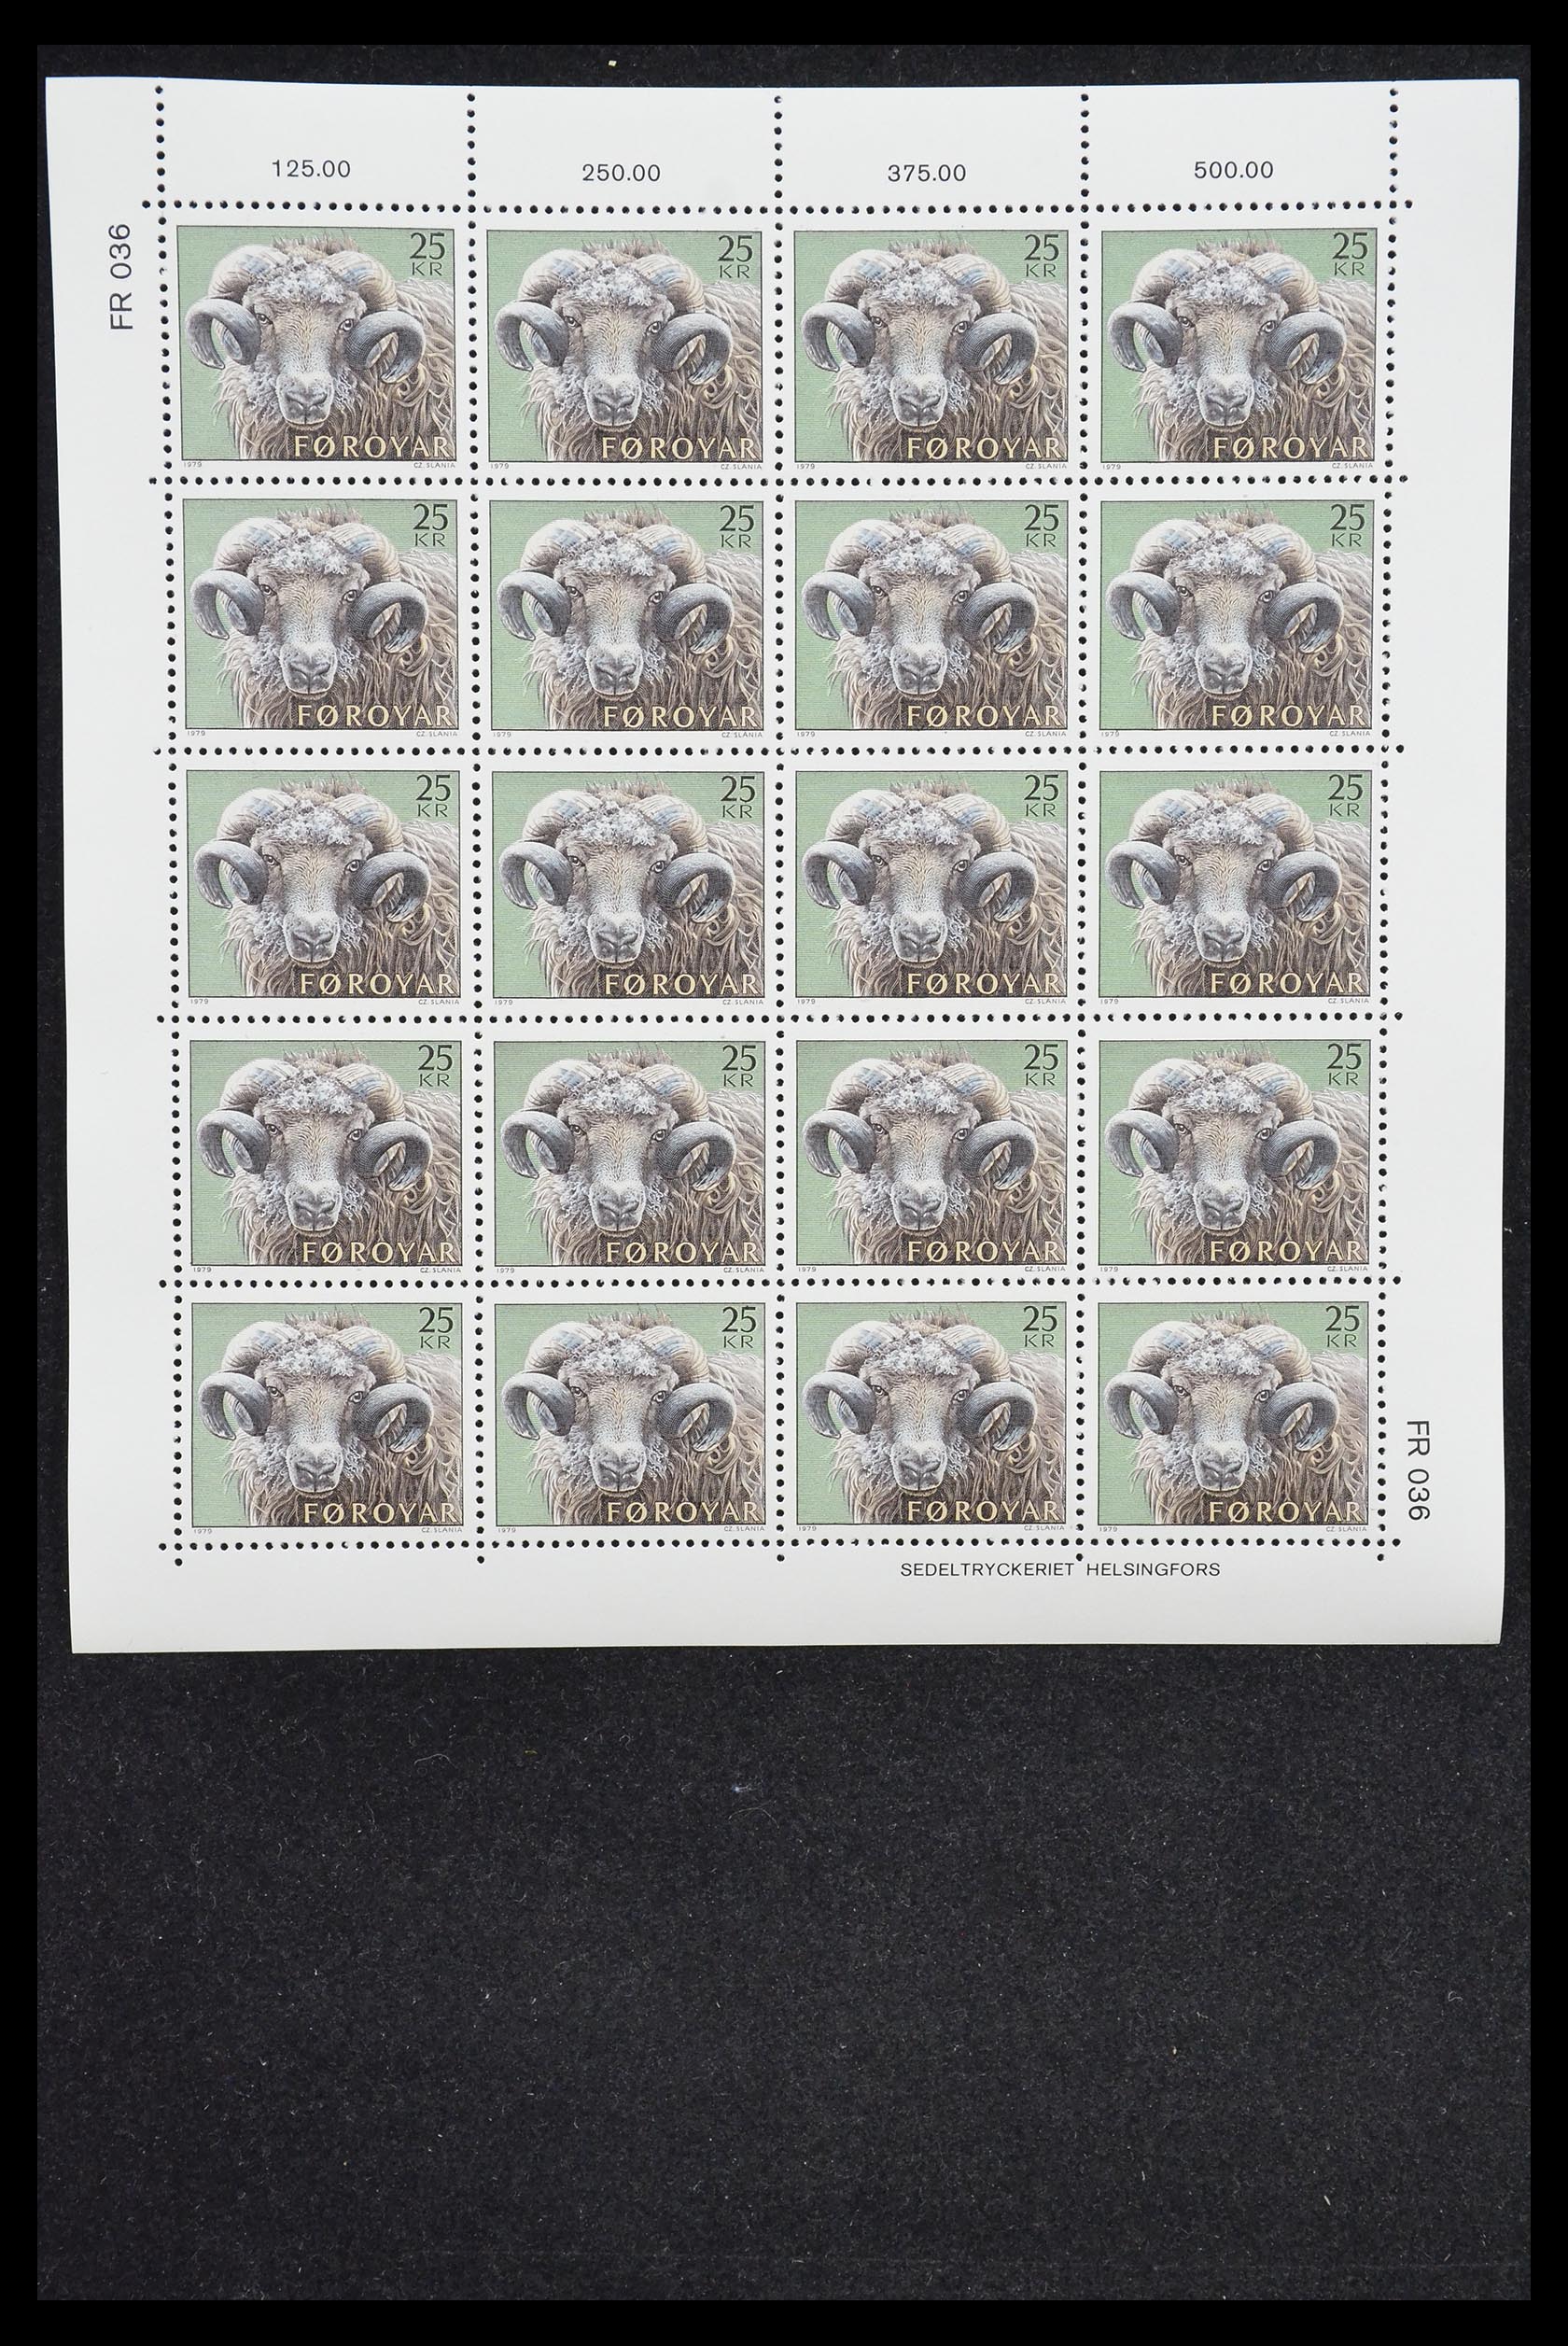 31376 093 - 31376 Faroe Islands 1975-2000.